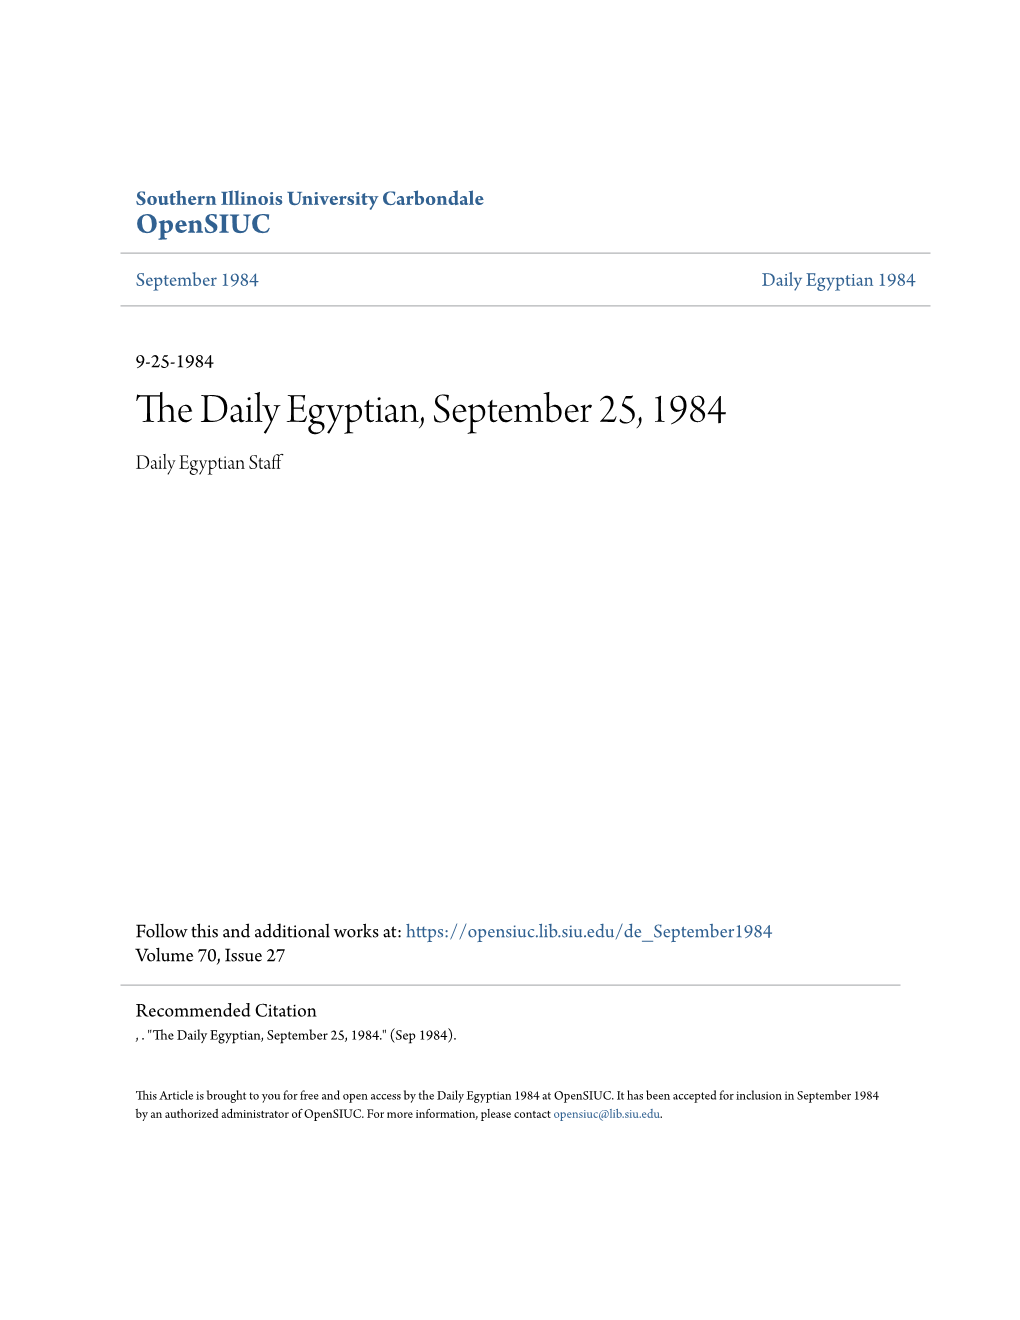 The Daily Egyptian, September 25, 1984